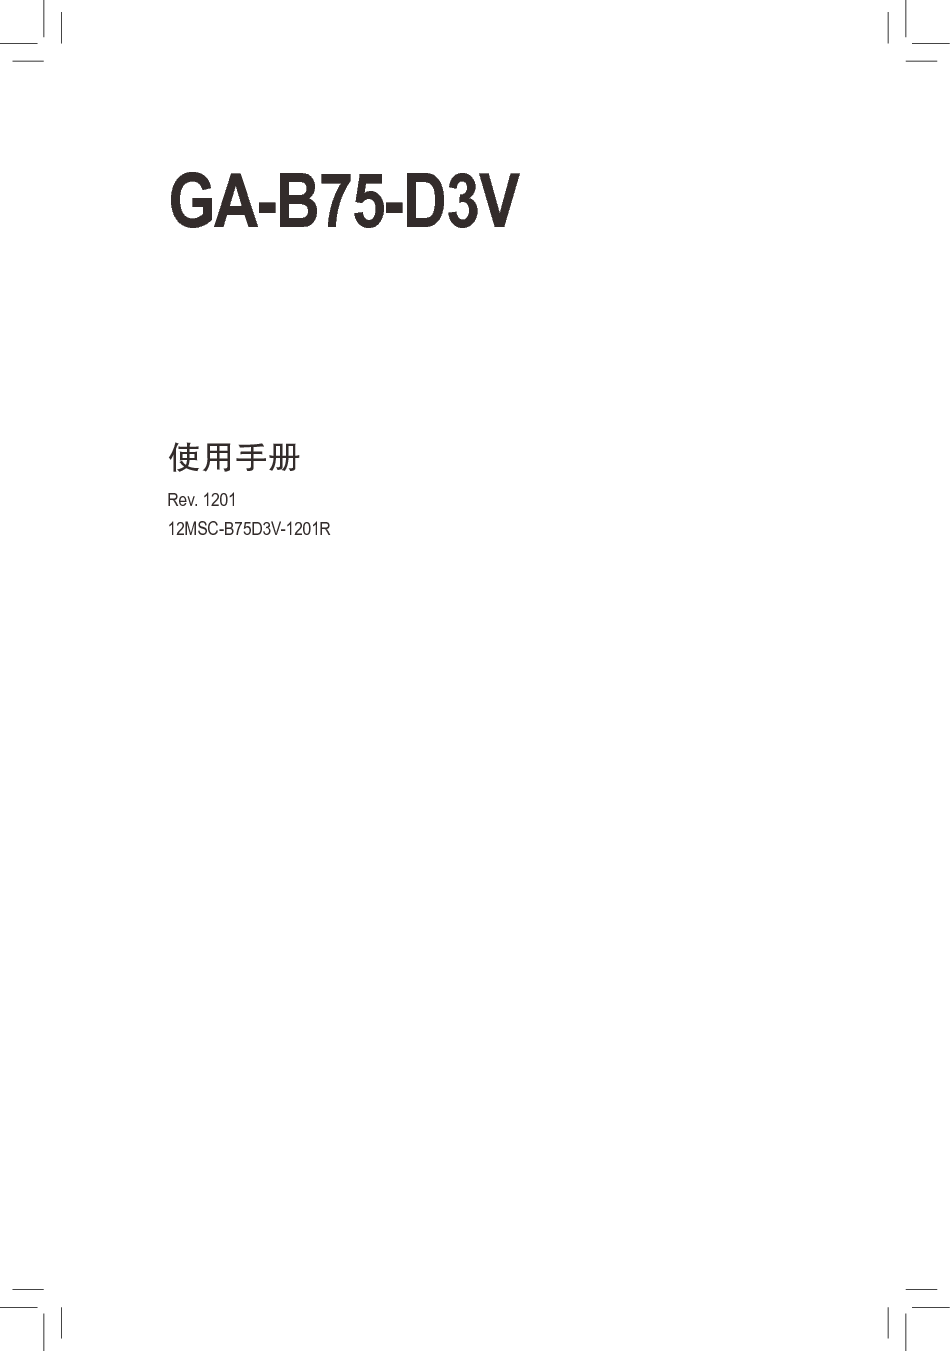 技嘉 Gigabyte GA-B75-D3V 1201版 使用手册 封面